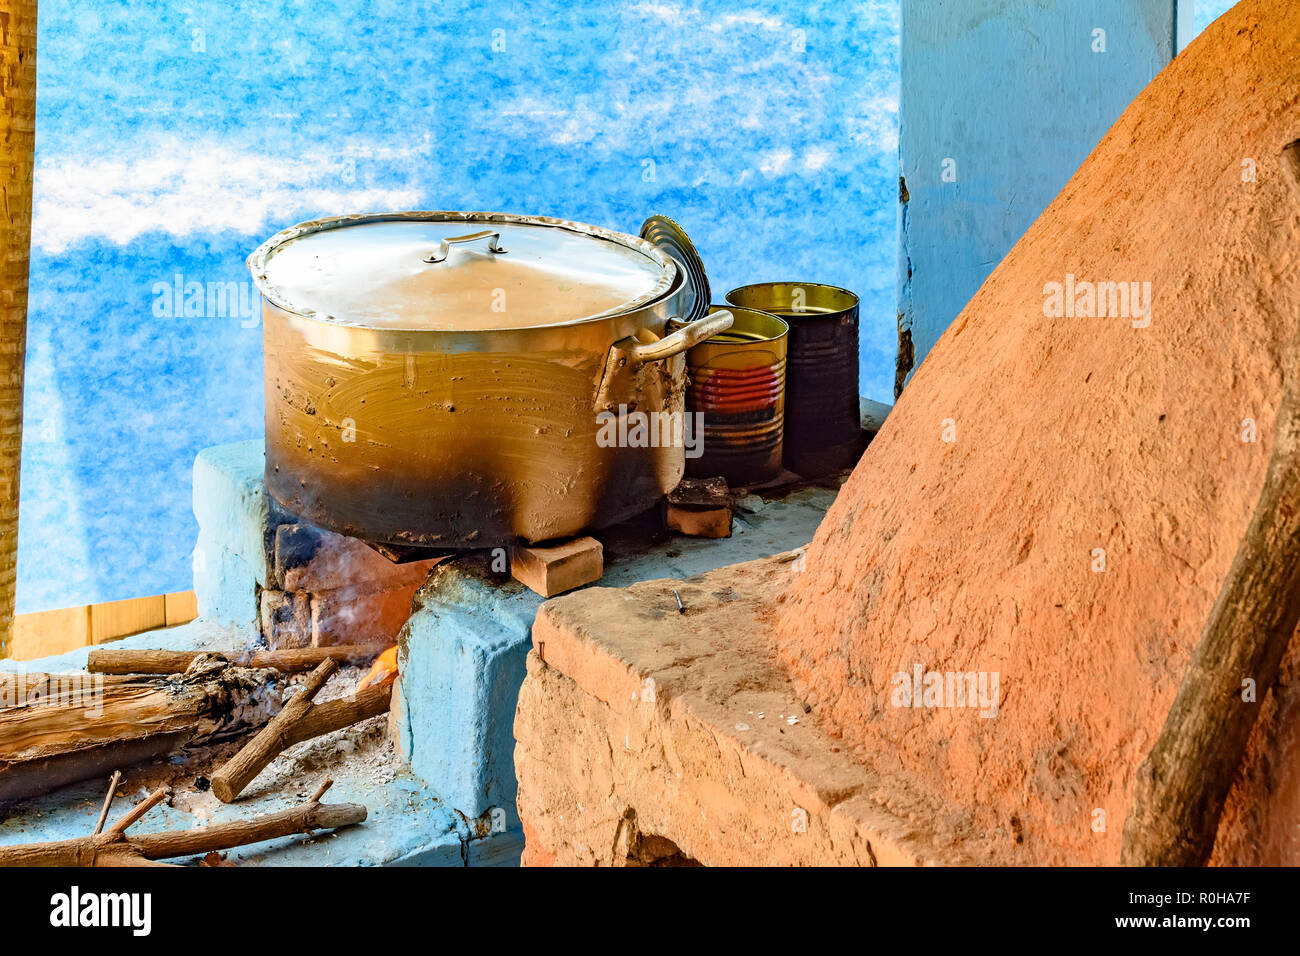 Cucina rustica dettaglio all'interno del Brasile con stufa a legna e forno di argilla preparare il cibo per essere servito Foto Stock